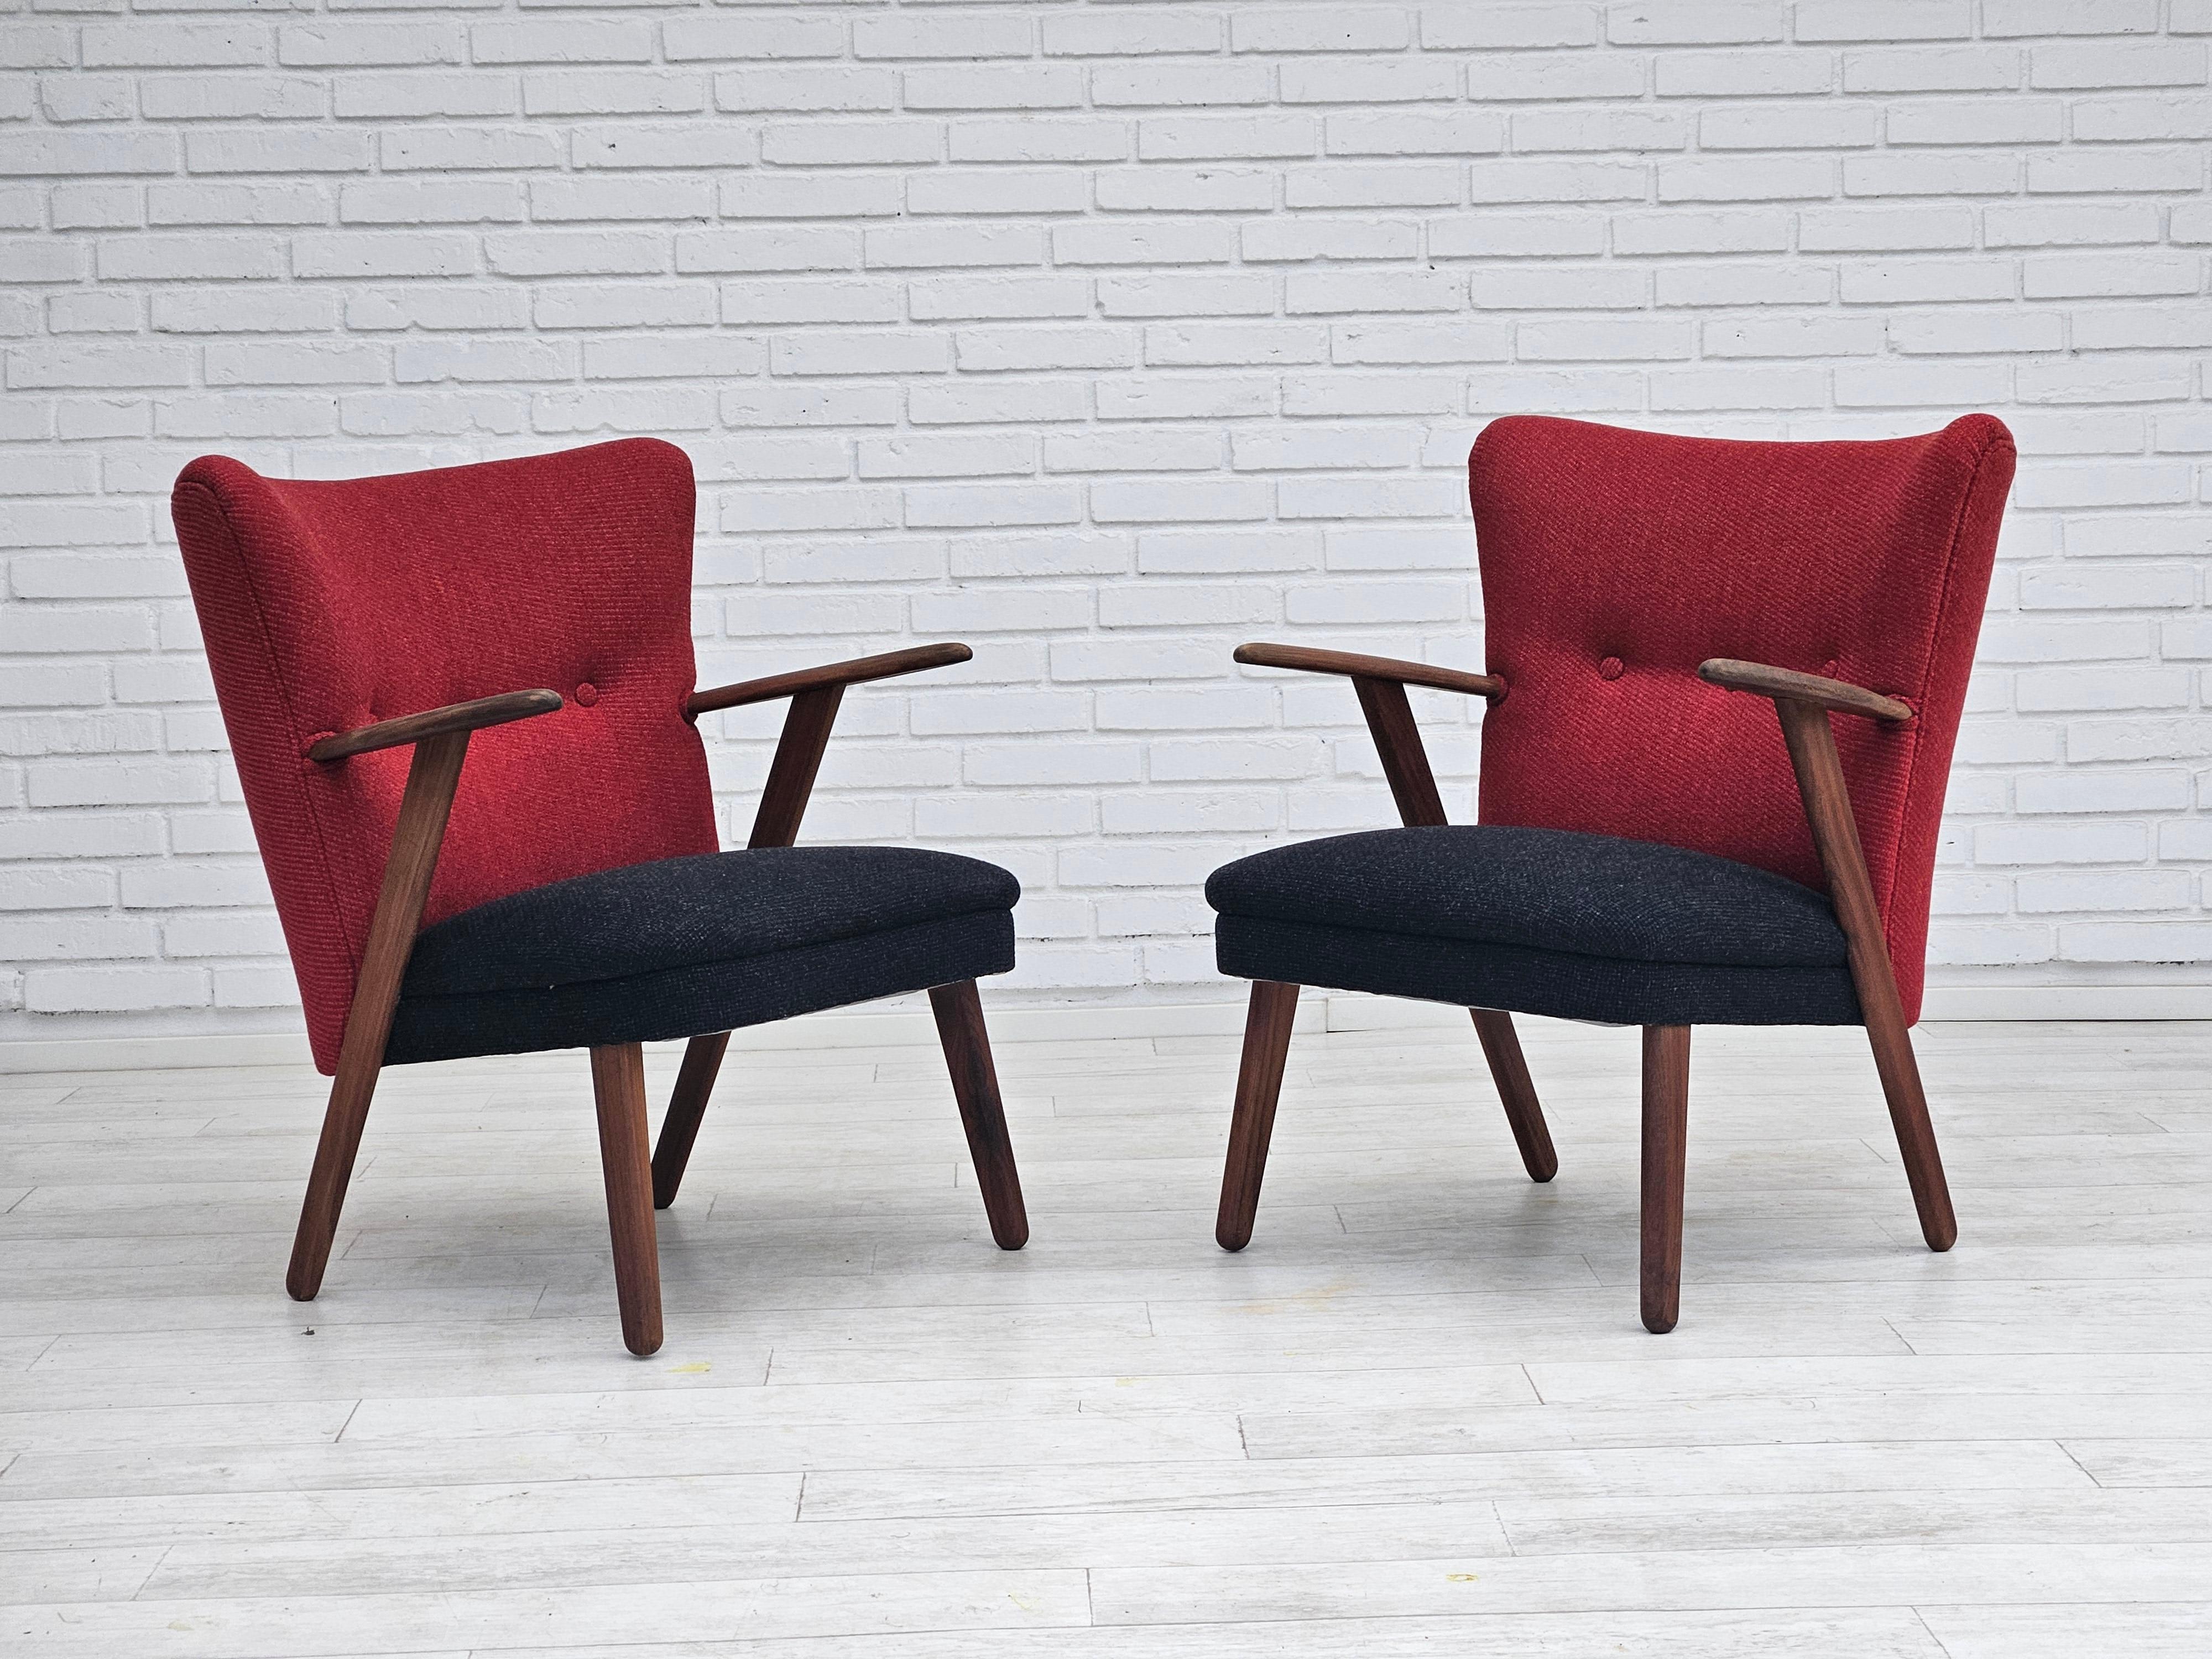 Années 1960, design danois par Erhardsen & Andersen. Fauteuil entièrement rénové et retapissé. Tissu de laine pour meubles en gris anthracite et rouge. Bois de teck renouvelé. Tapisserie d'ameublement neuve. Fabriqué par le fabricant de meubles